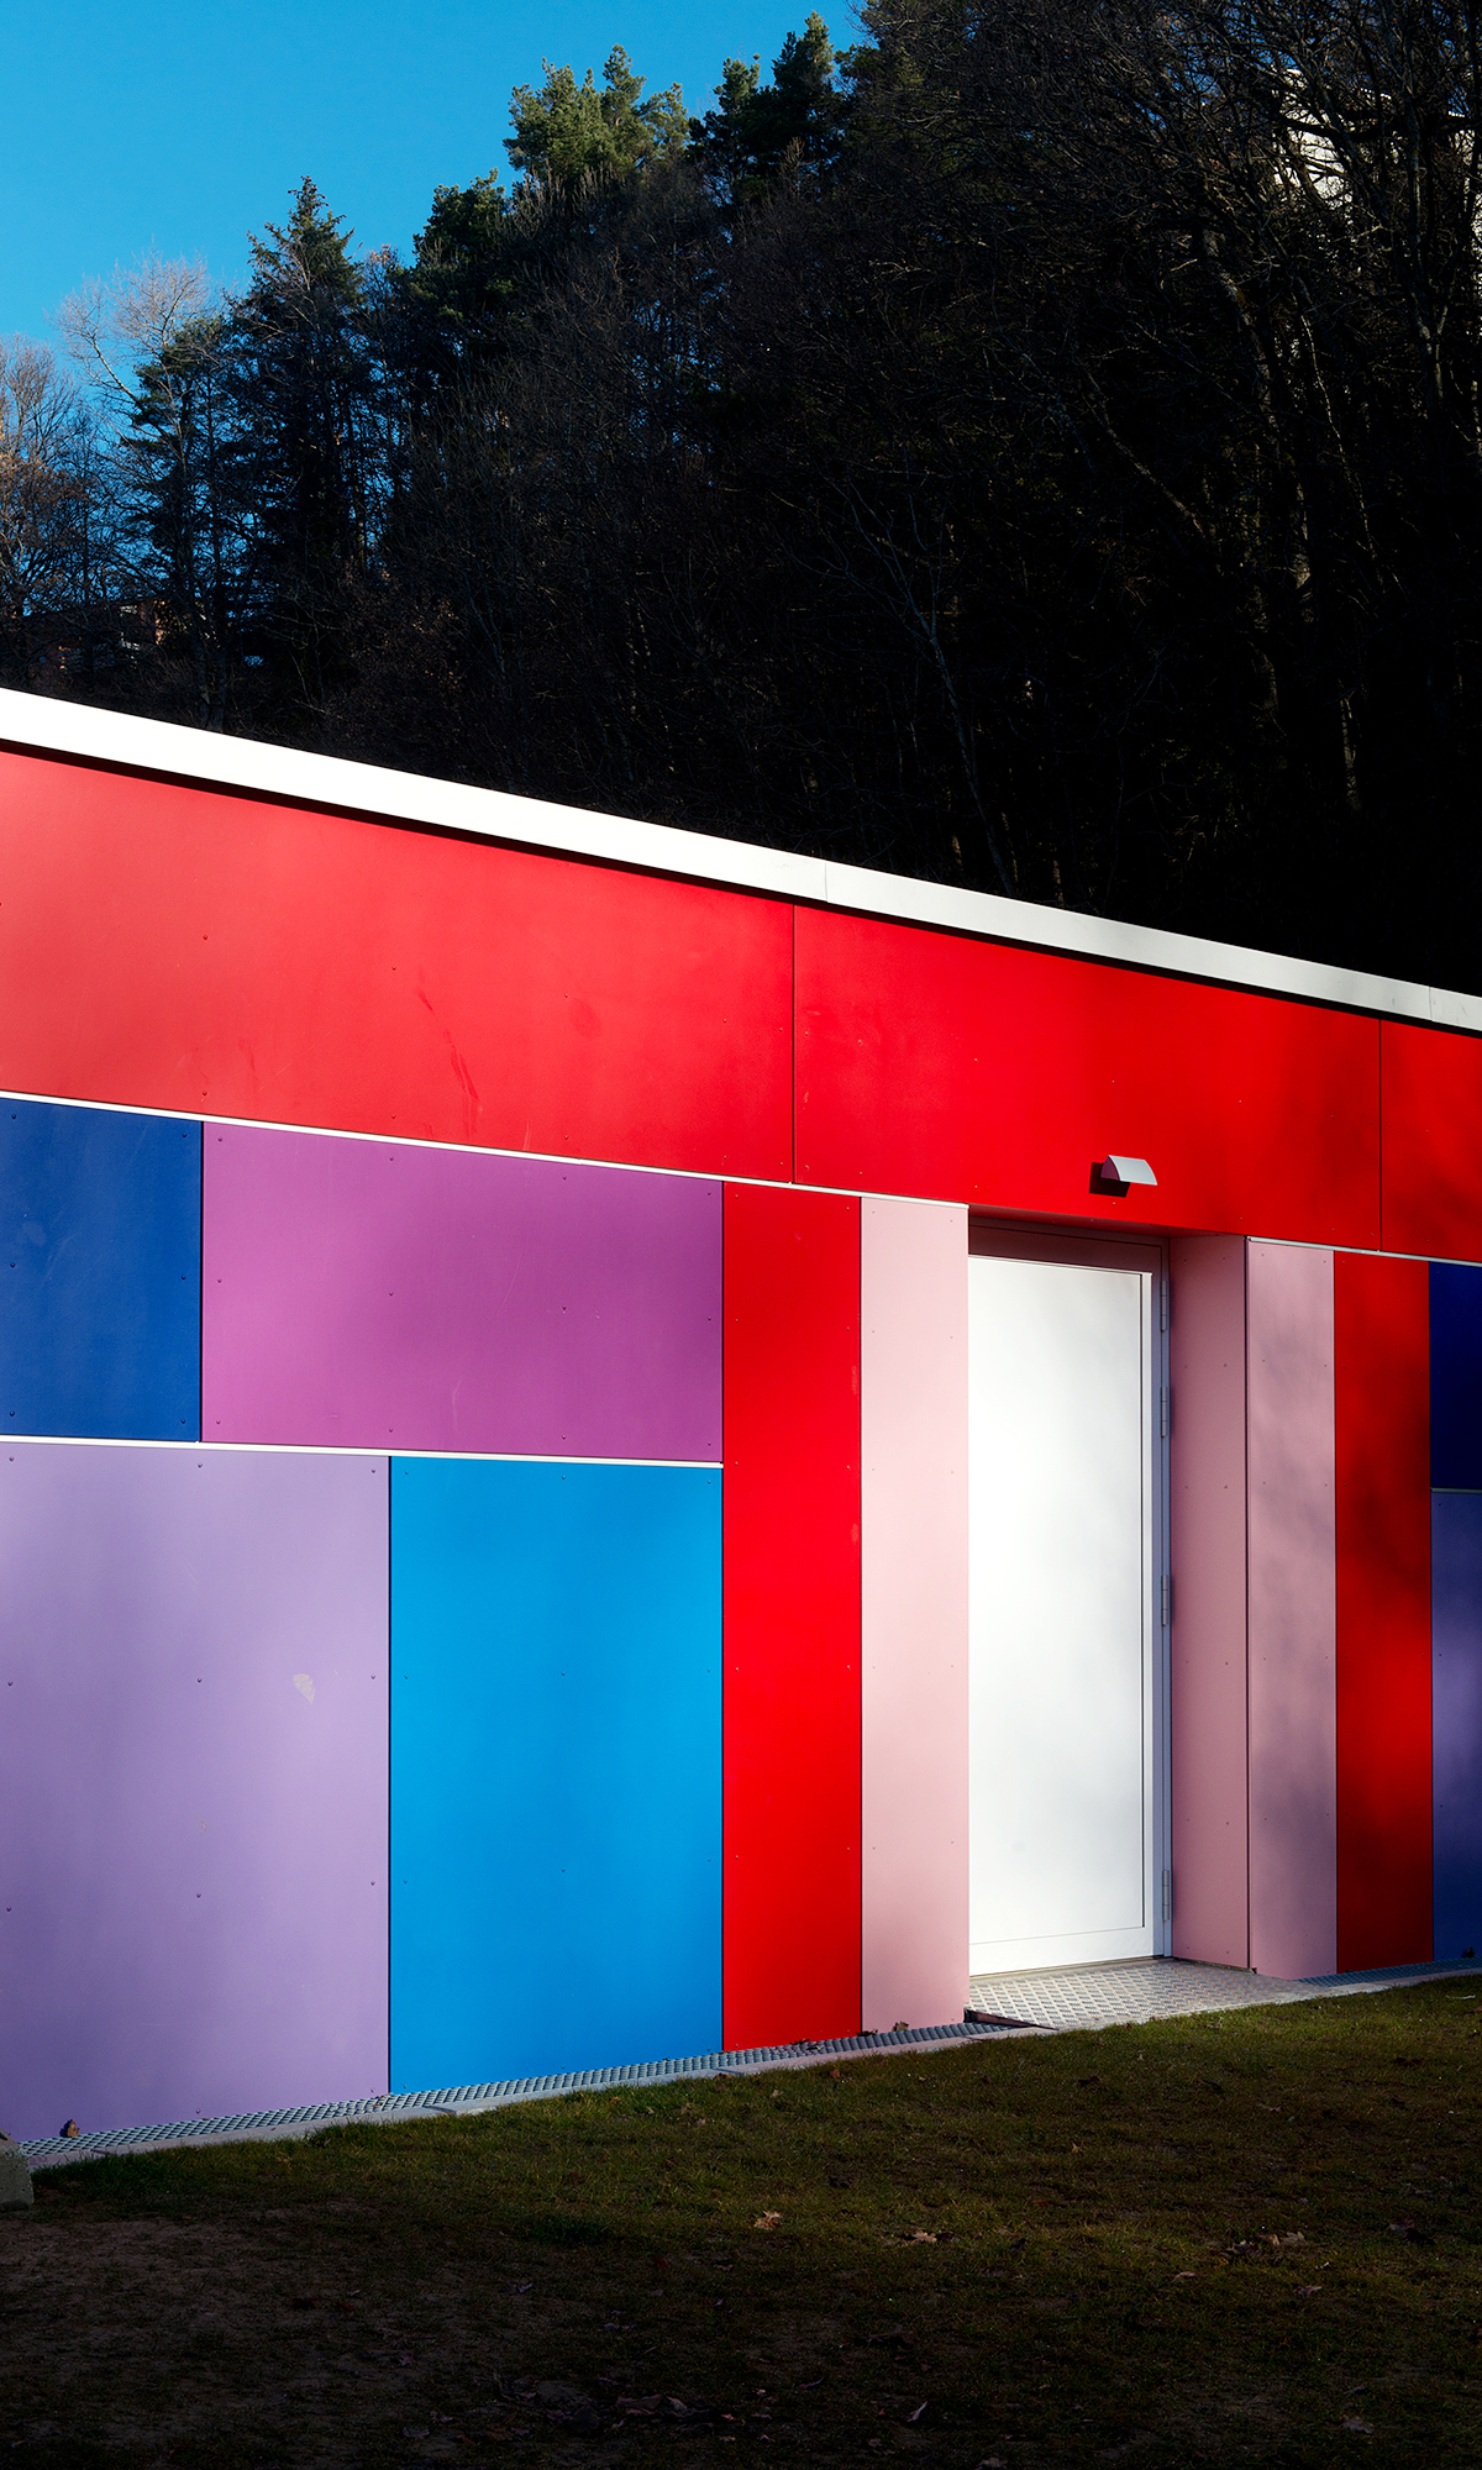 Die Aufnahme zeigt die farbenfrohe Fassade vom Modulbau eines Kindergartens